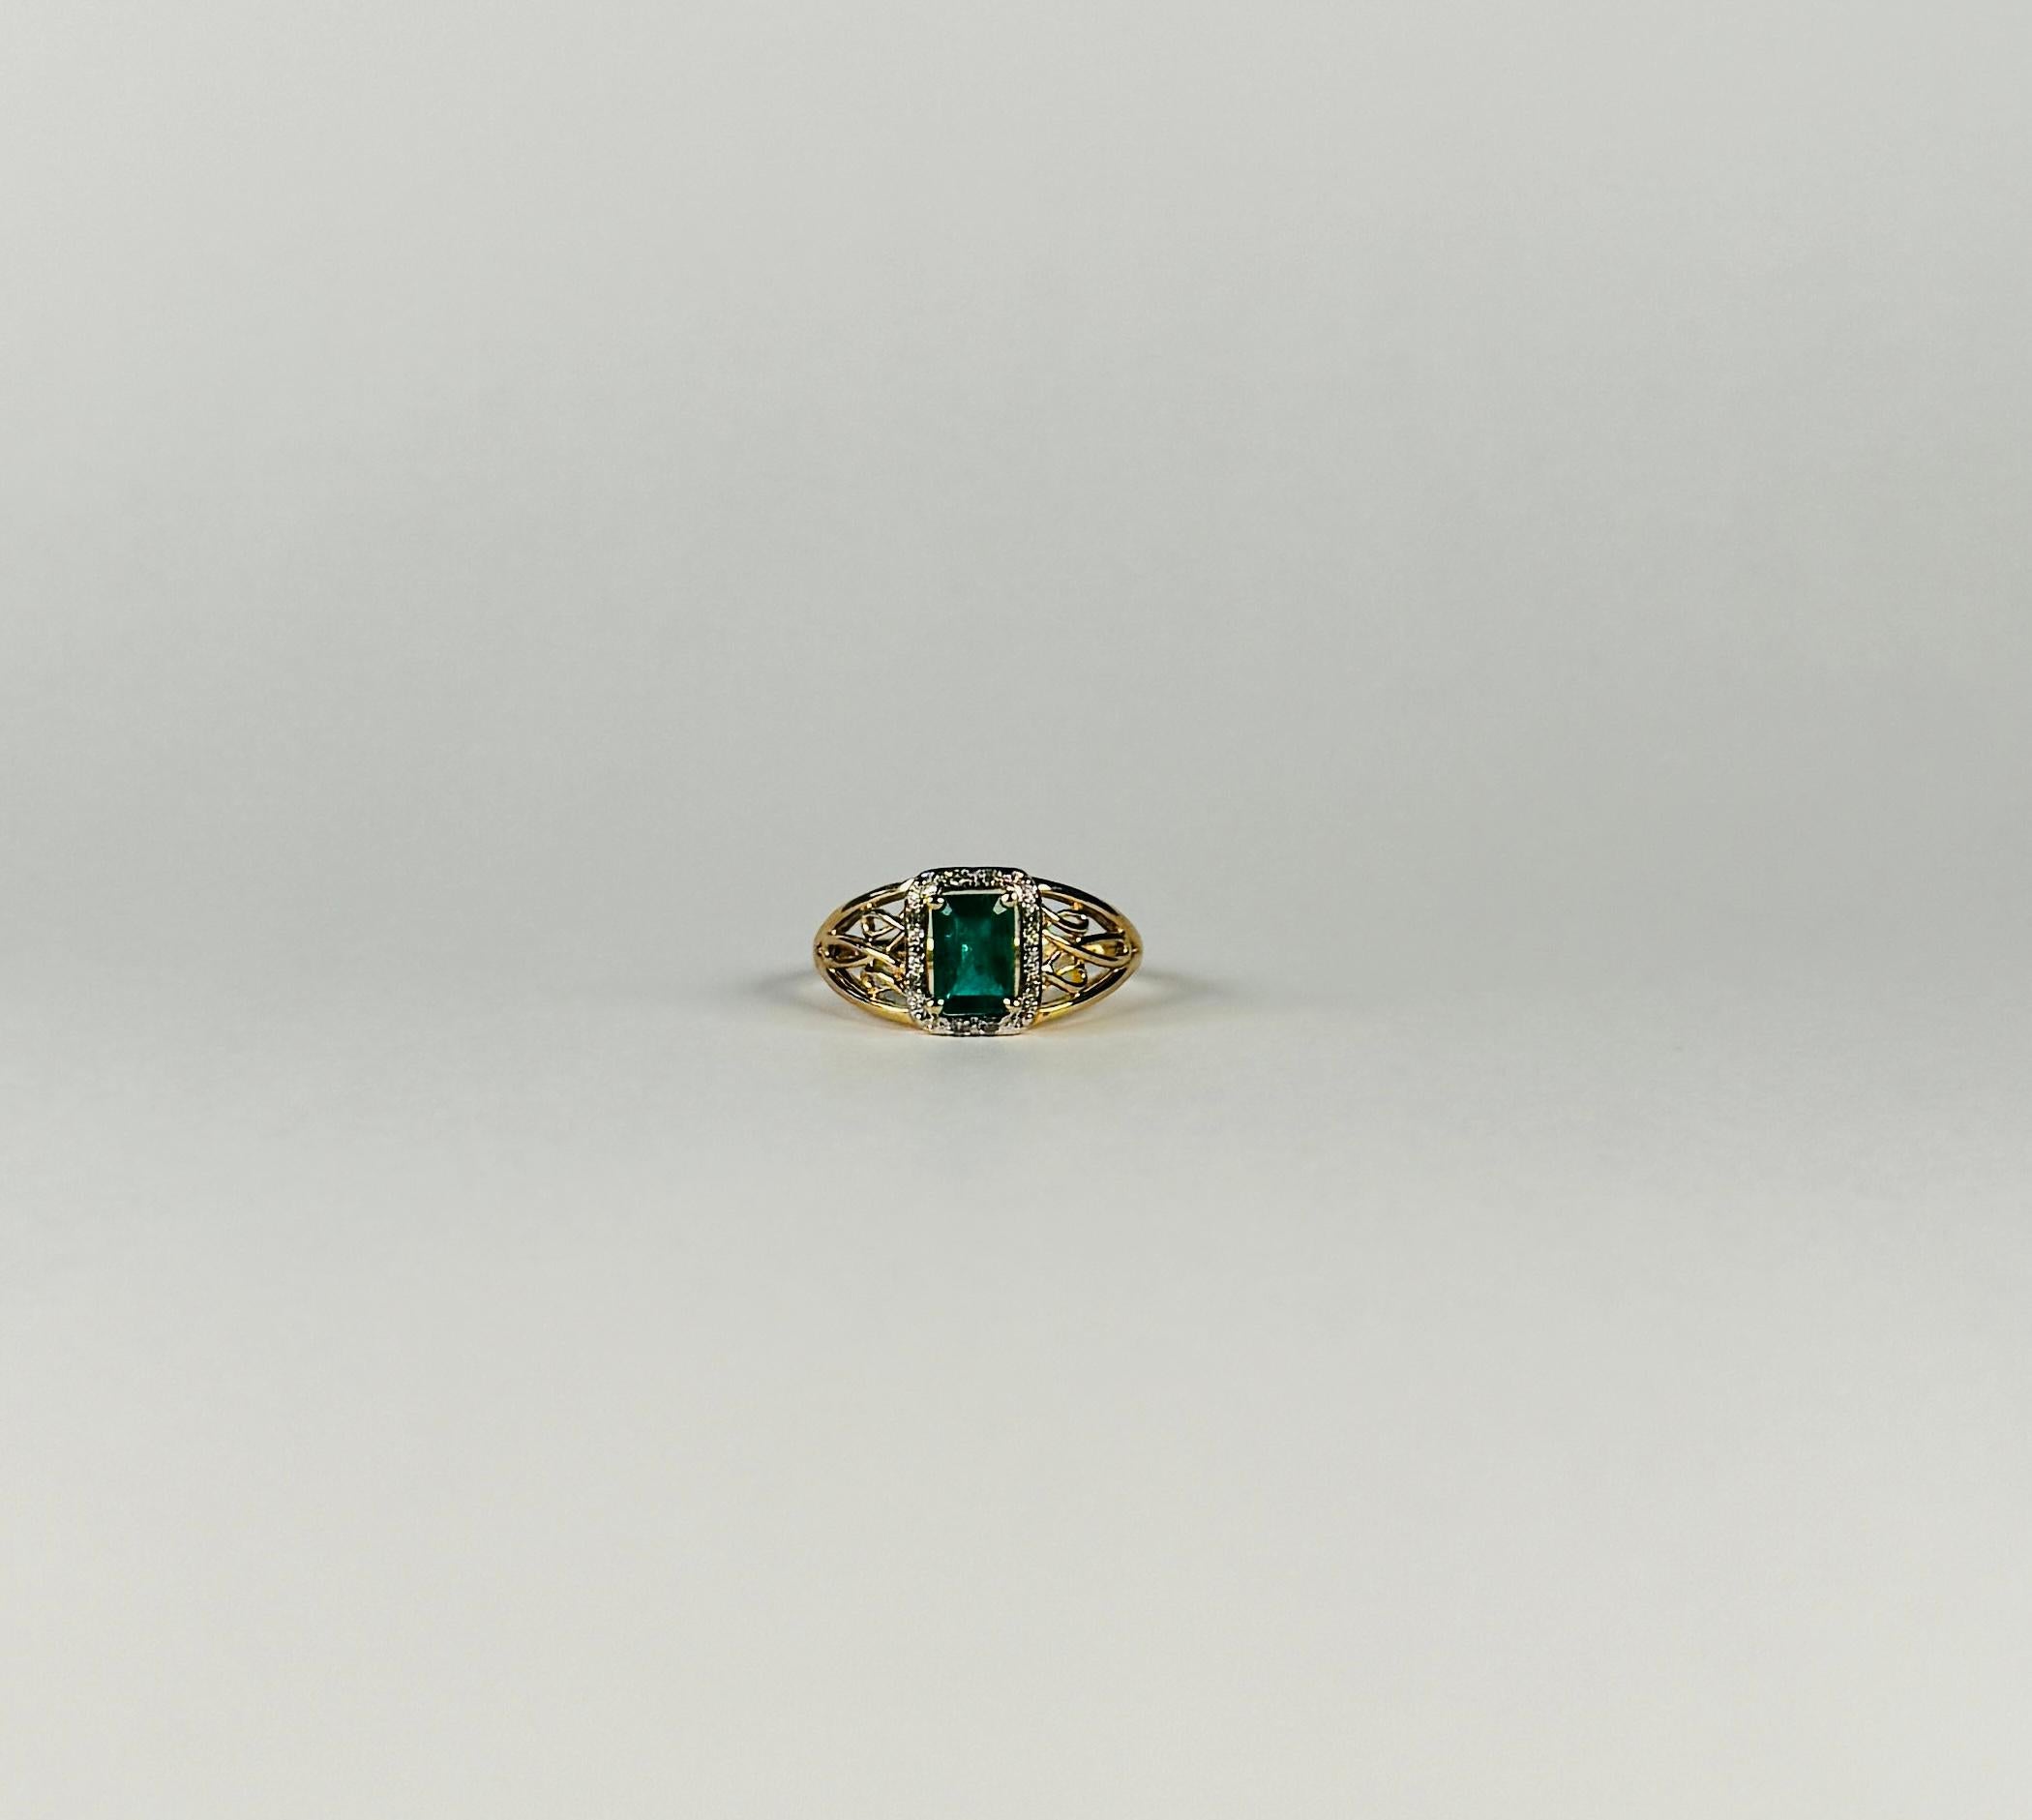 Mit diesem Ring werden Sie im Handumdrehen schick aussehen. Dieses gebrauchte Schmuckstück mit schön facettiertem Smaragd ist ein absoluter Blickfang und ist mit Diamanten im Brillantschliff umgeben. Dieser Vintage-Ring mit europäischem Ursprung ist